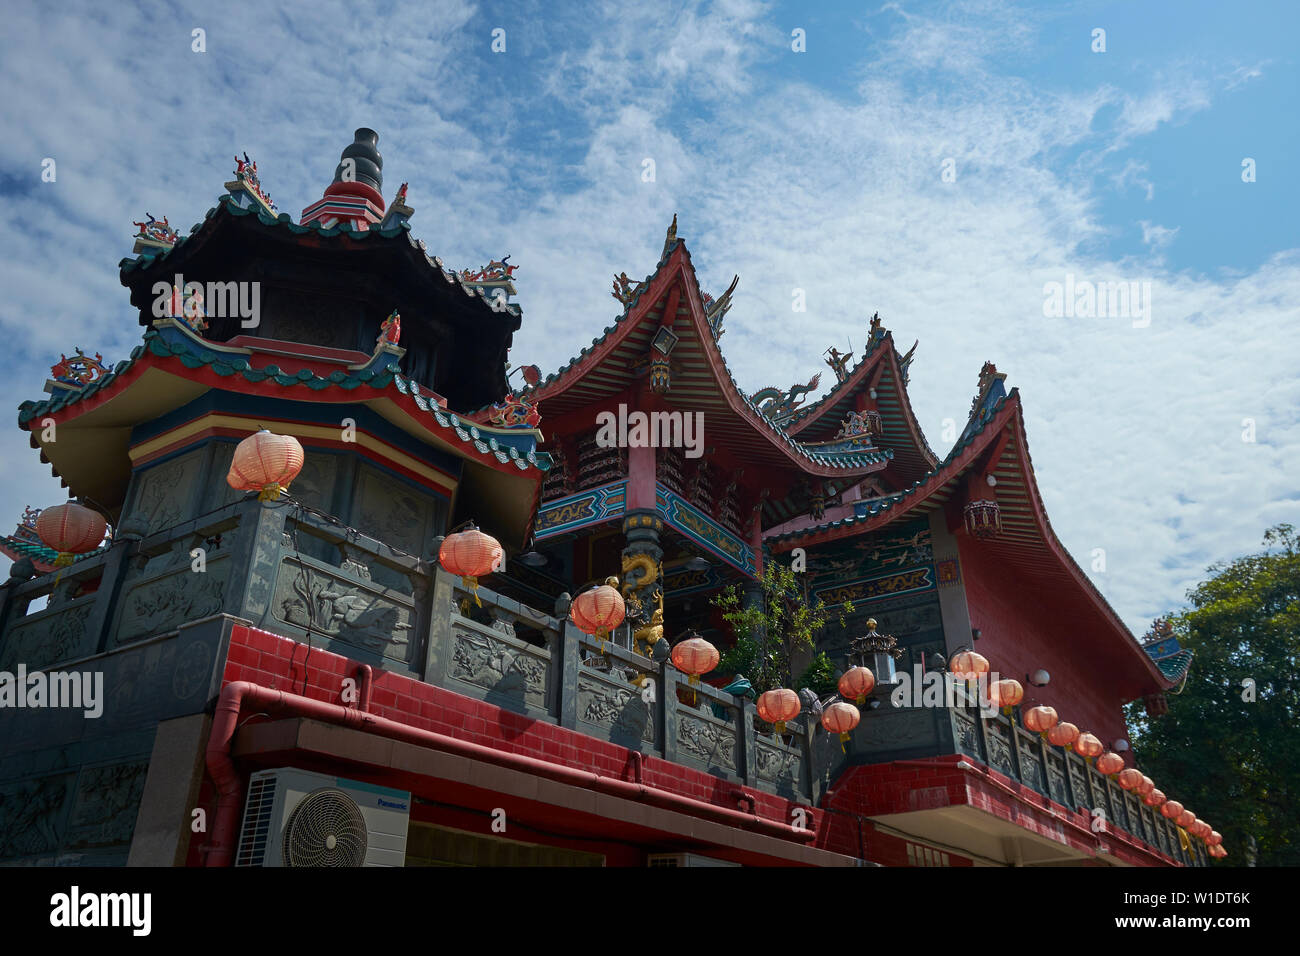 The beautiful Tua Pek Kong Chinese temple in Bintulu, Borneo, Malaysia. Stock Photo